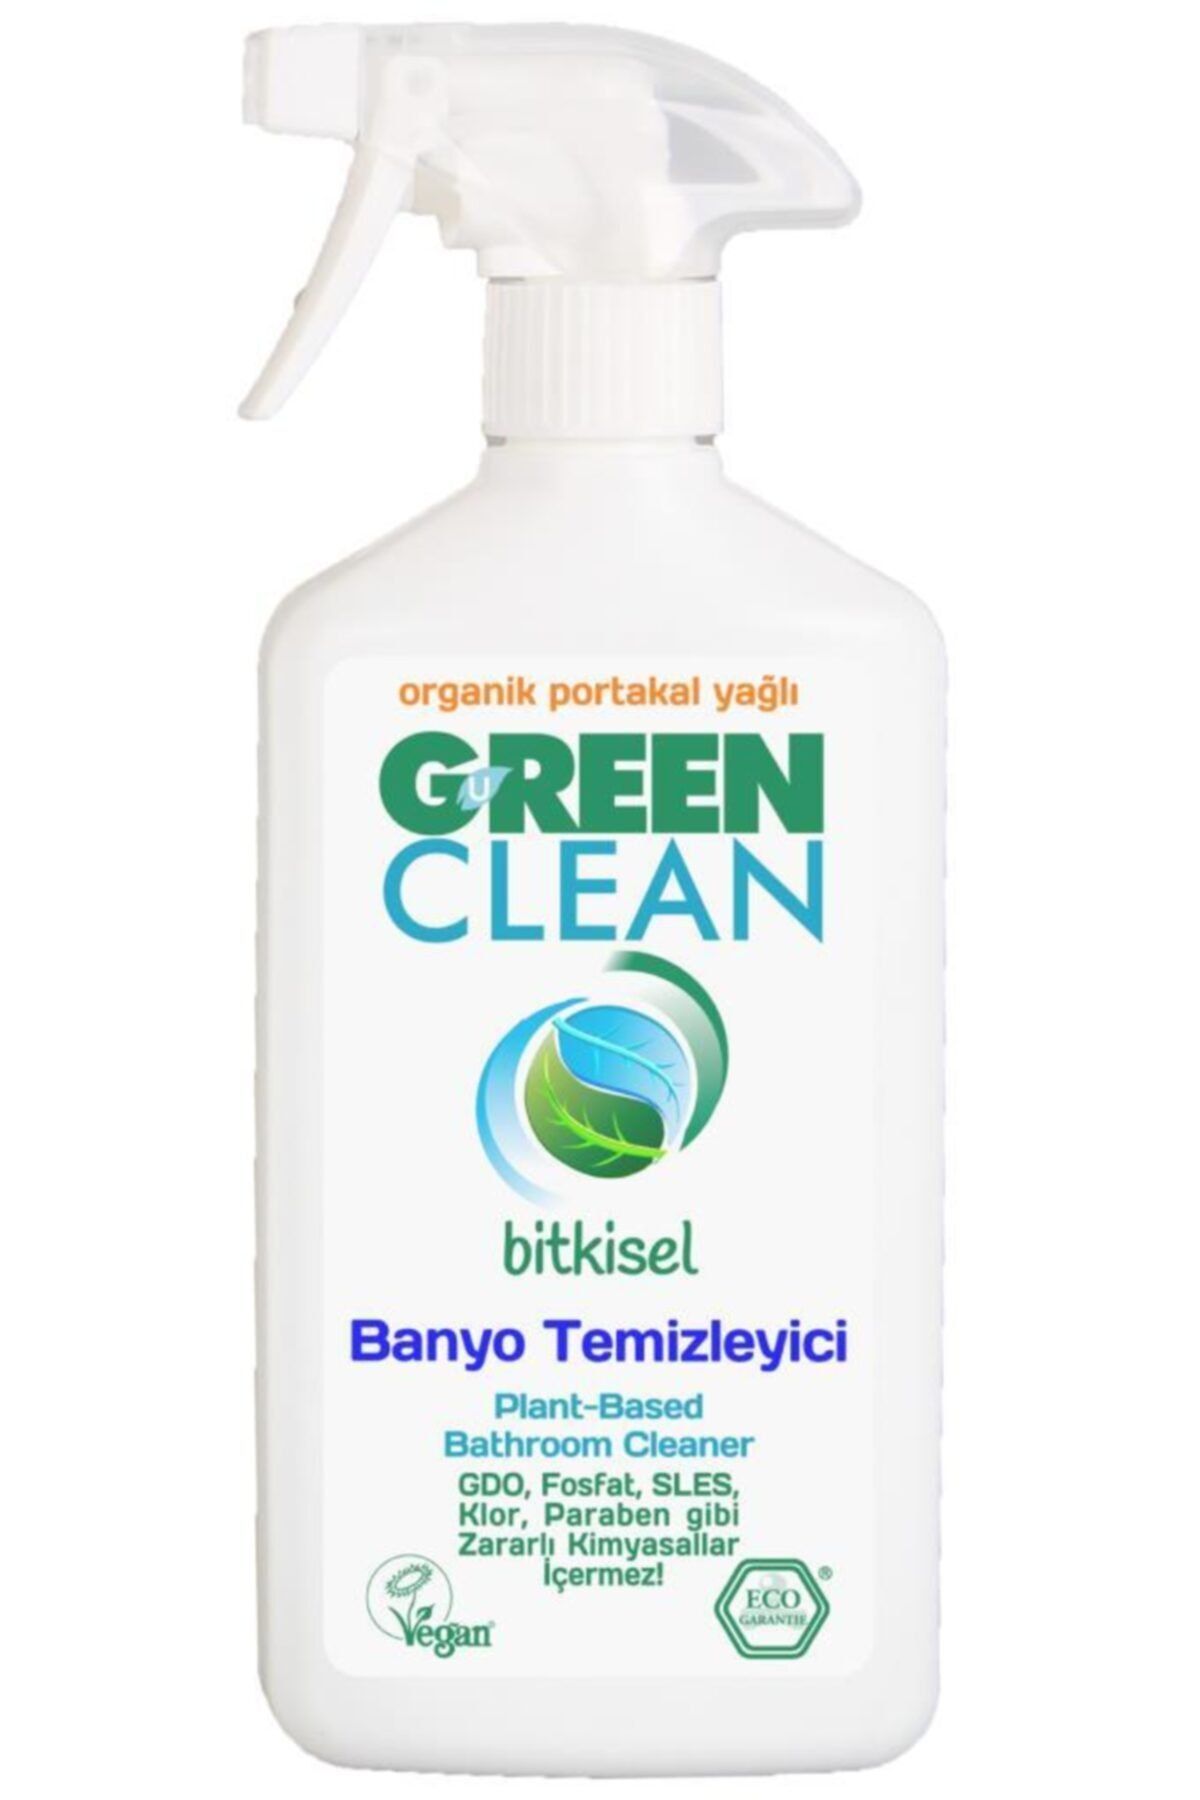 Green Clean Organik Portakal Yağlı Bitkisel Banyo Temizleyici 500 ml